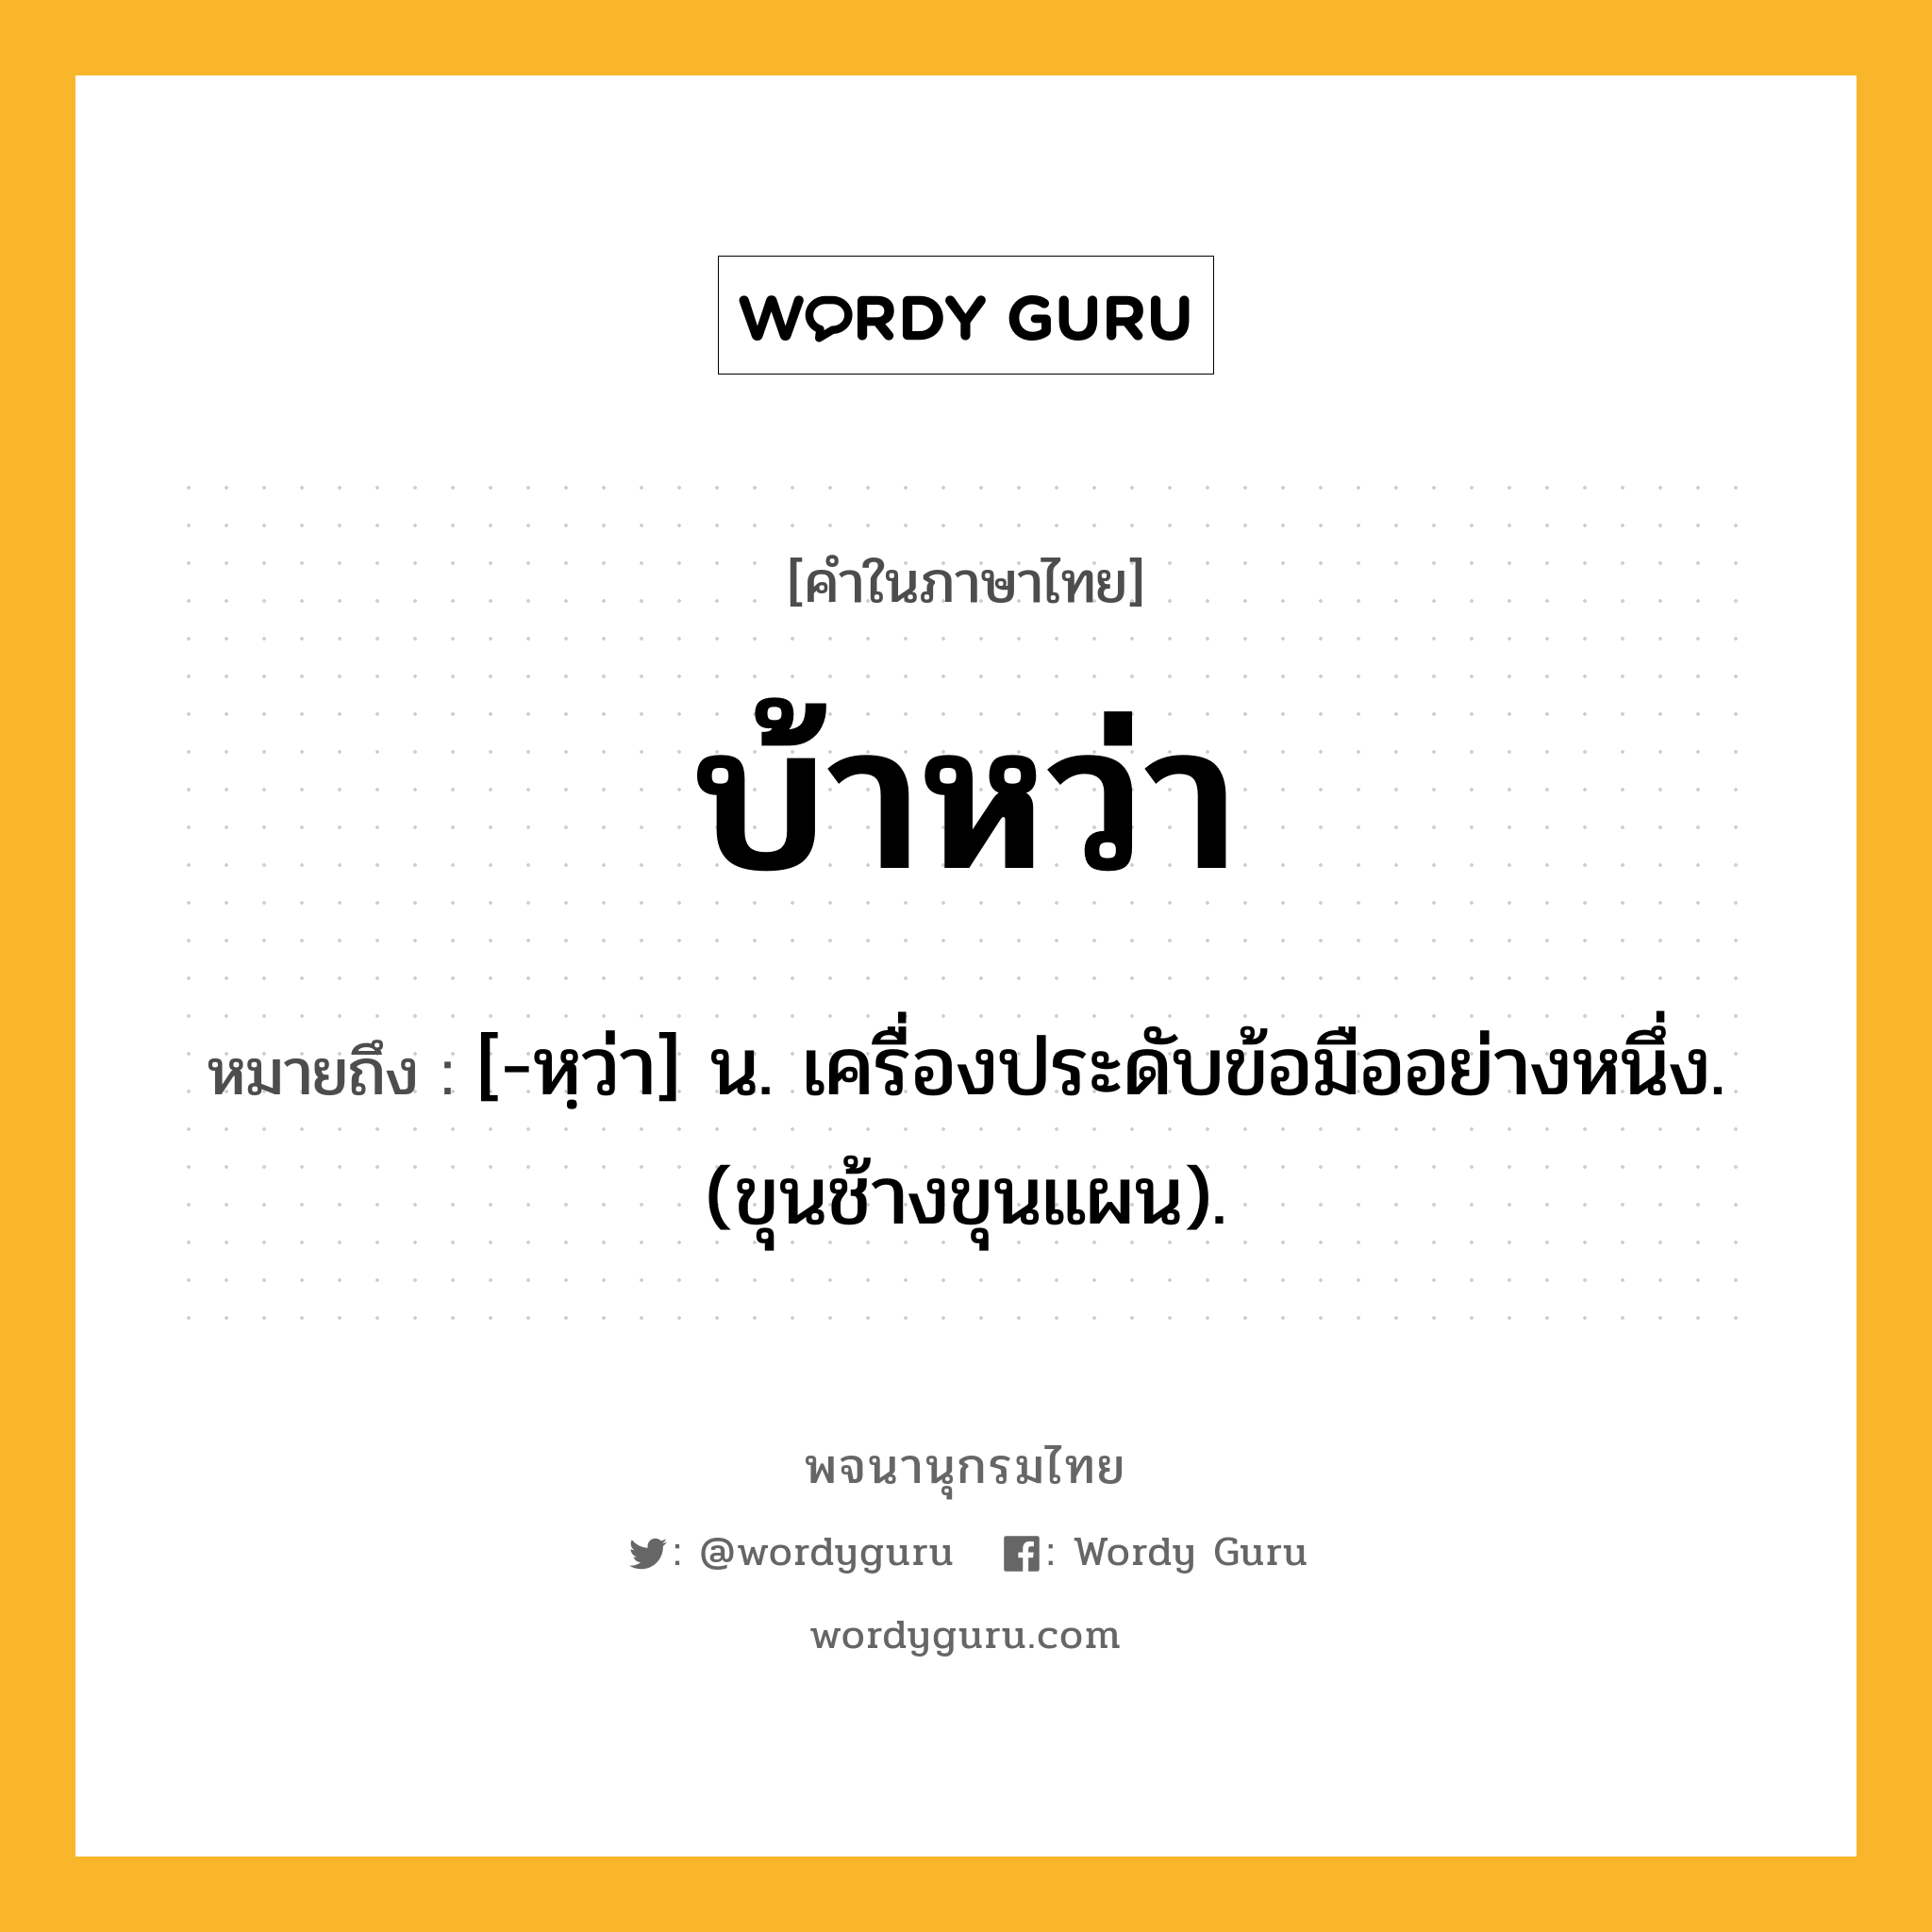 บ้าหว่า ความหมาย หมายถึงอะไร?, คำในภาษาไทย บ้าหว่า หมายถึง [-หฺว่า] น. เครื่องประดับข้อมืออย่างหนึ่ง. (ขุนช้างขุนแผน).